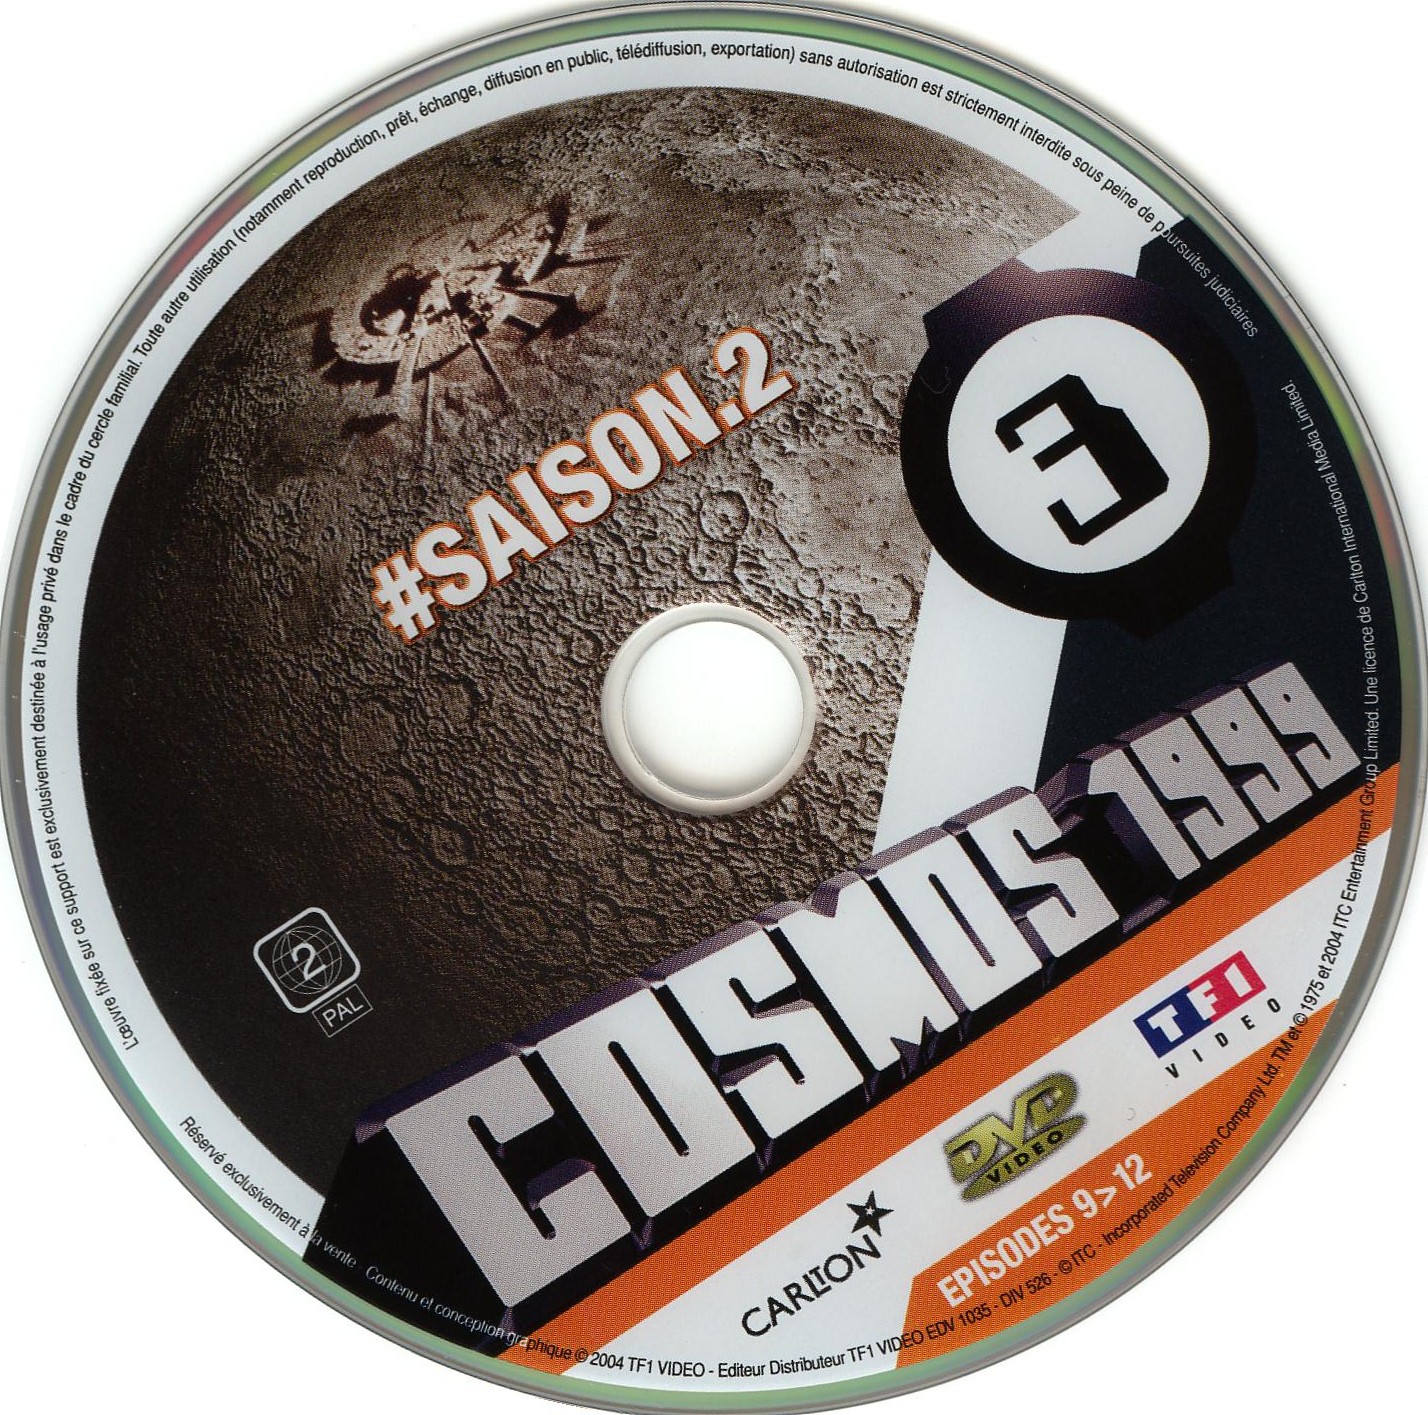 Cosmos 1999 saison 2 dvd 3